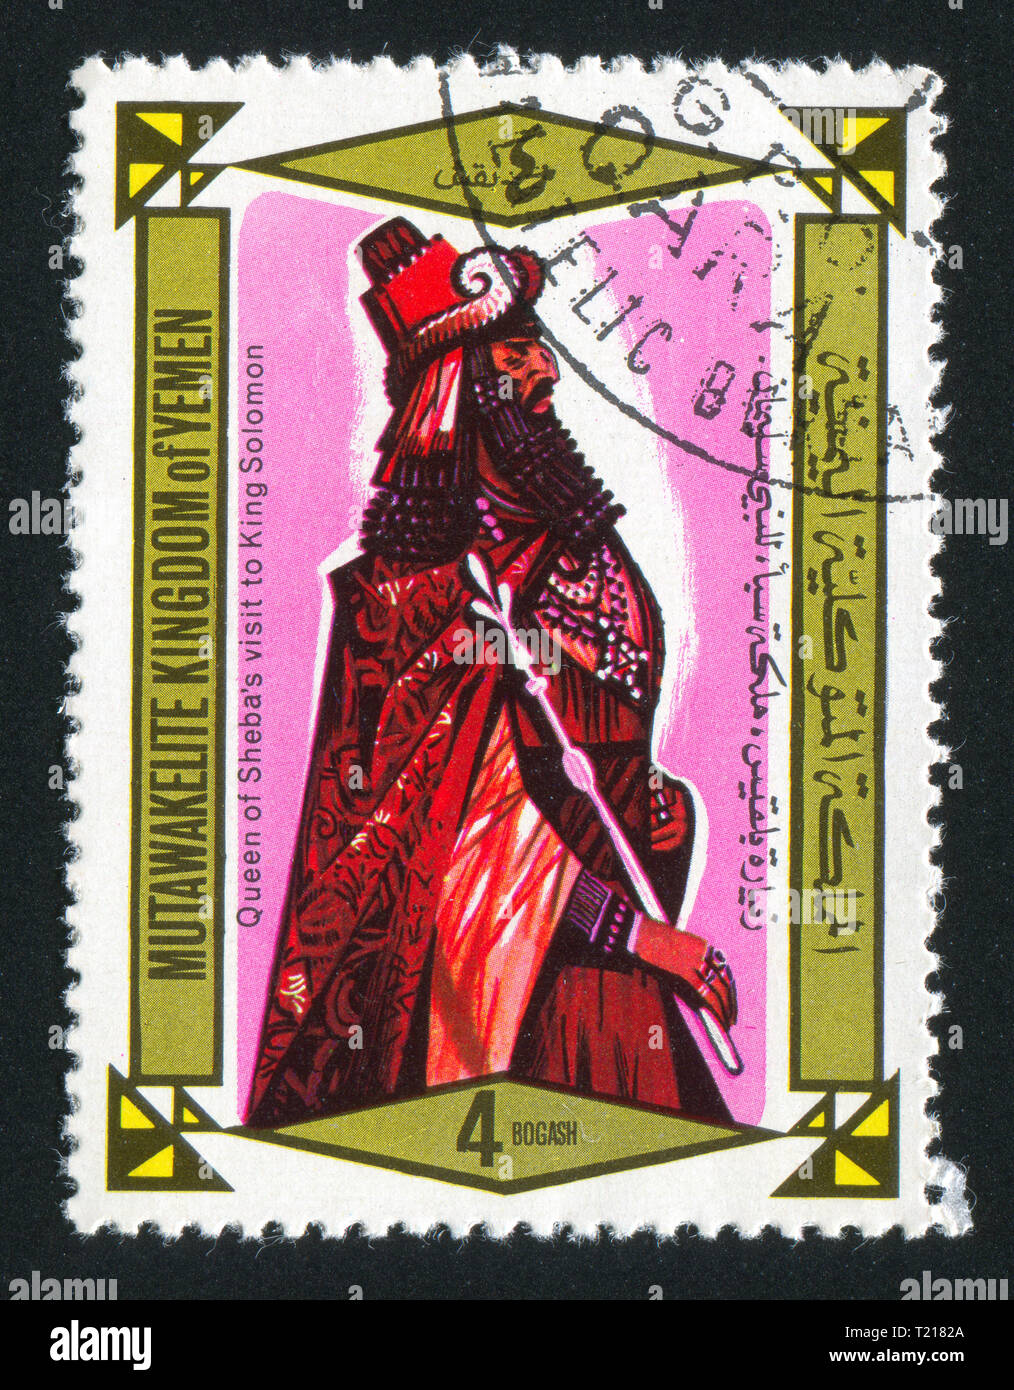 Jemen - ca. 1968: Briefmarke von Jemen gedruckt, zeigt König Salomo, ca. 1968 Stockfoto